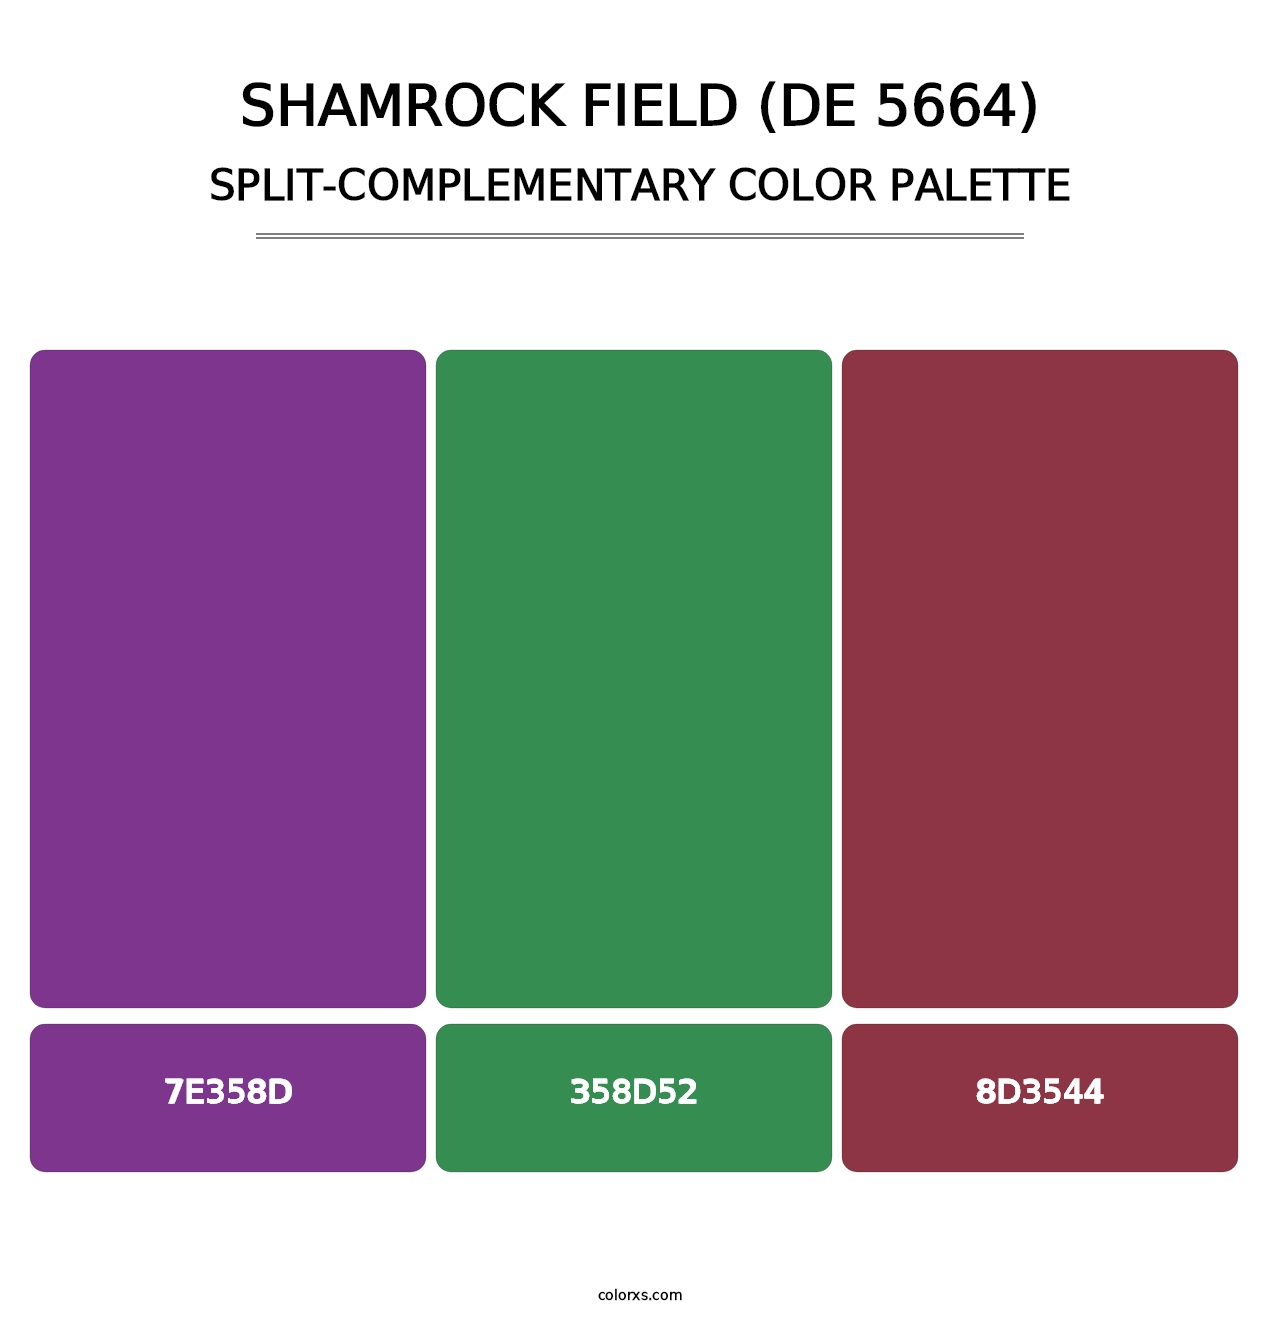 Shamrock Field (DE 5664) - Split-Complementary Color Palette